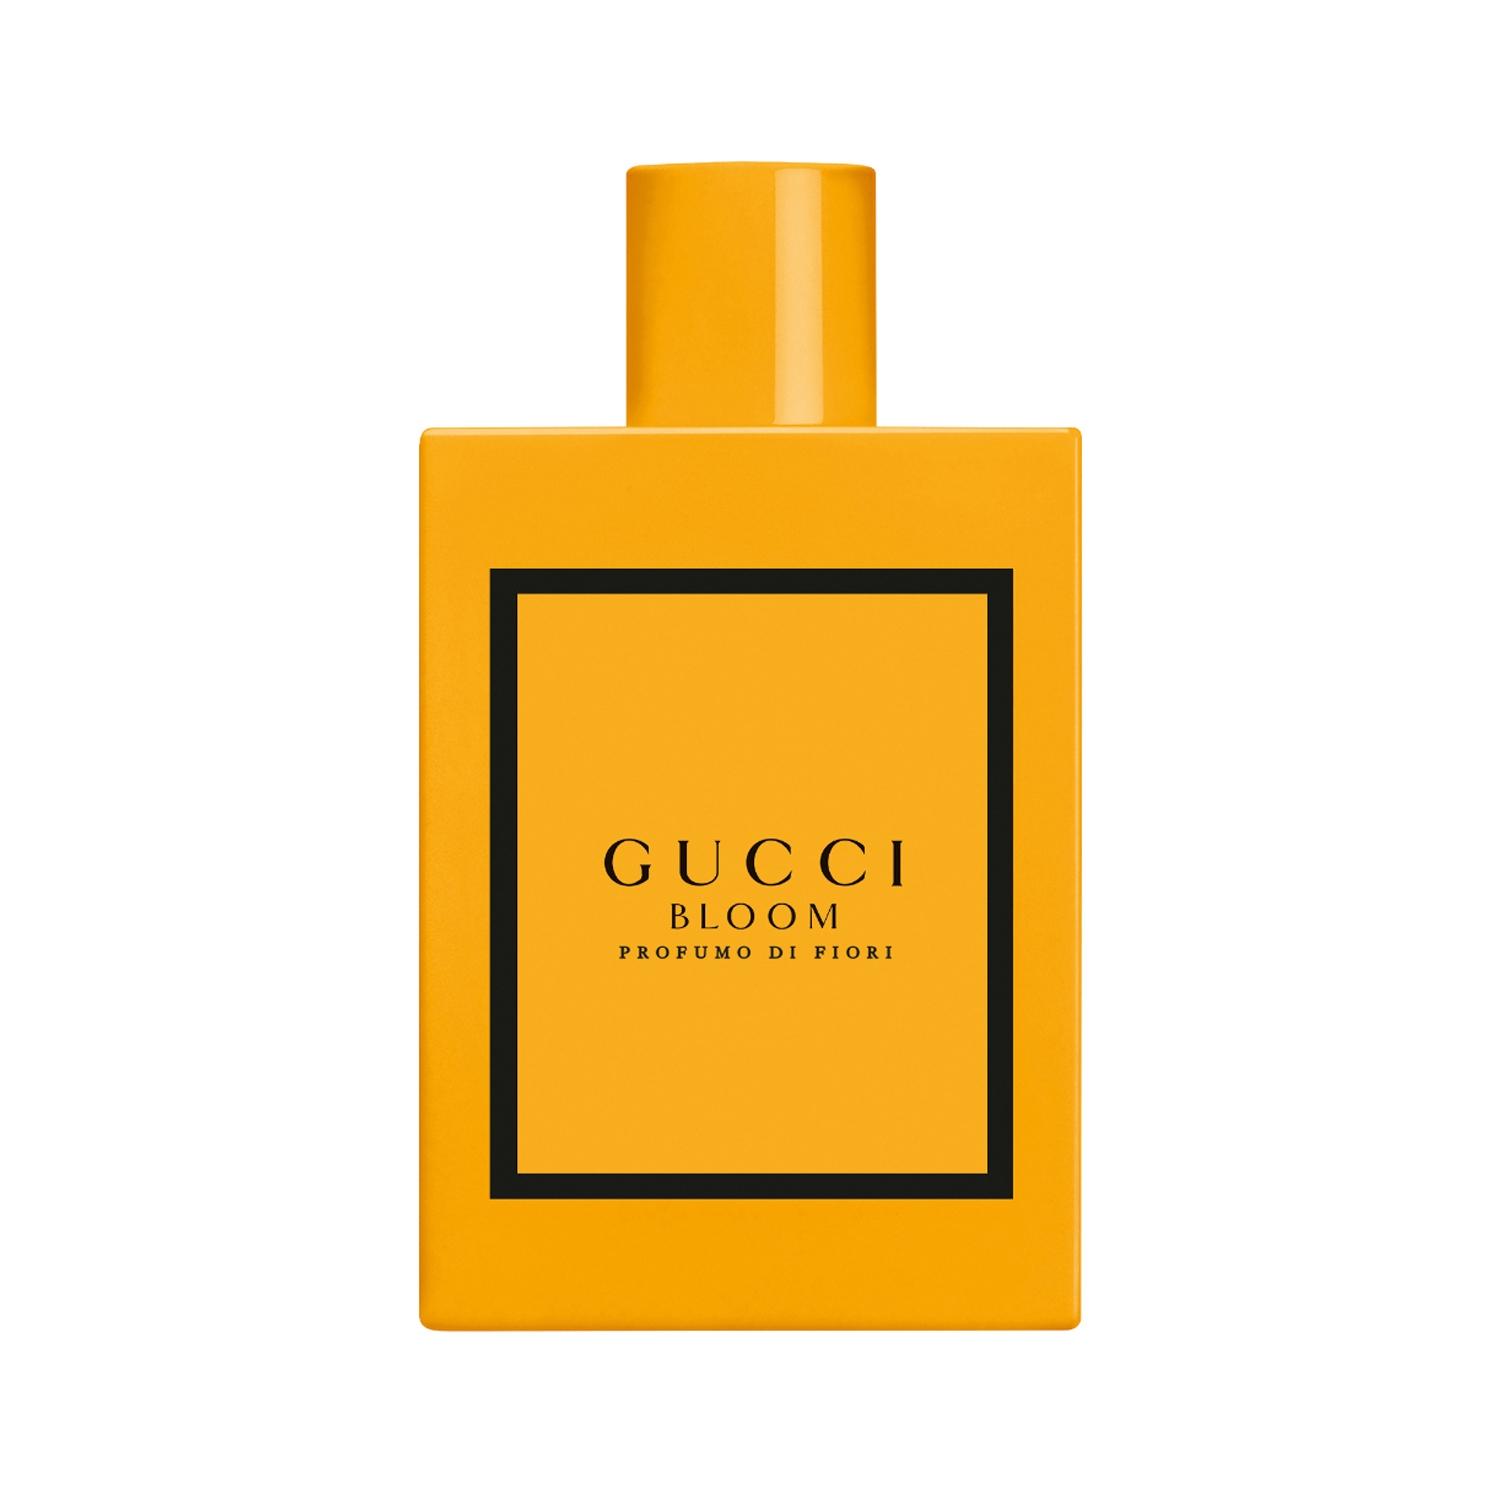 Gucci Bloom Profumo Di Fiori Eau De Parfum (100ml)